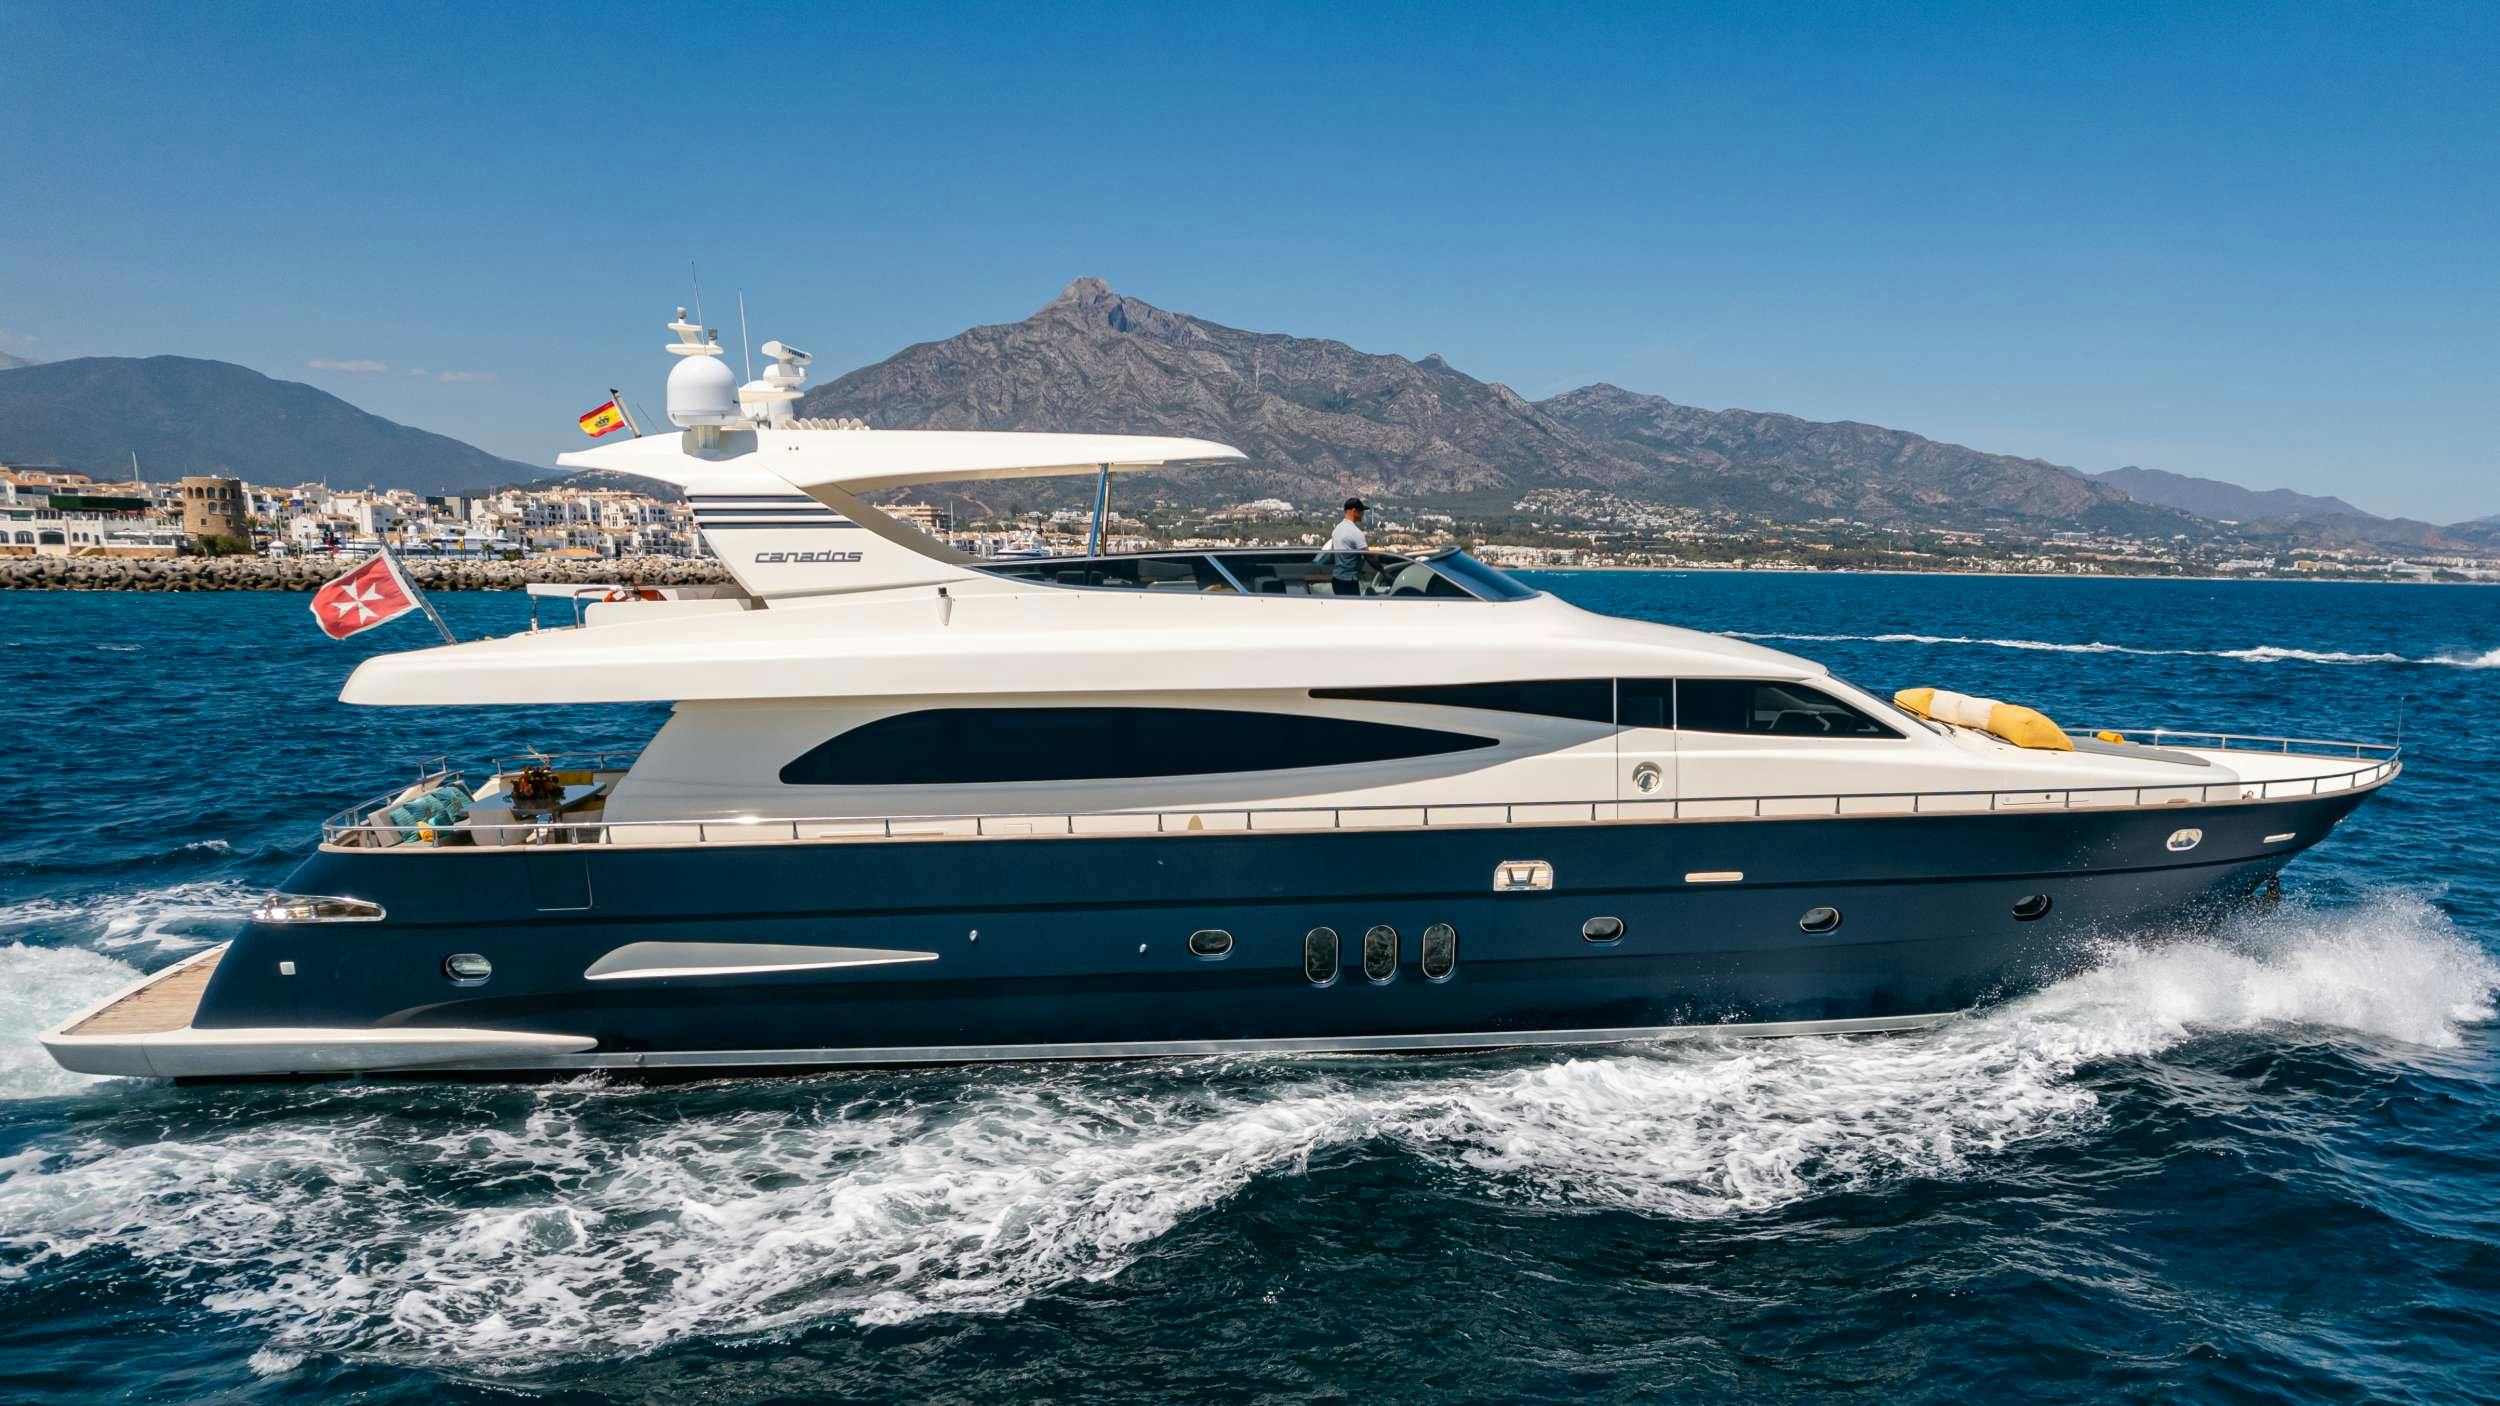 Fourteen - Yacht Charter Portocolom & Boat hire in Balearics & Spain 1